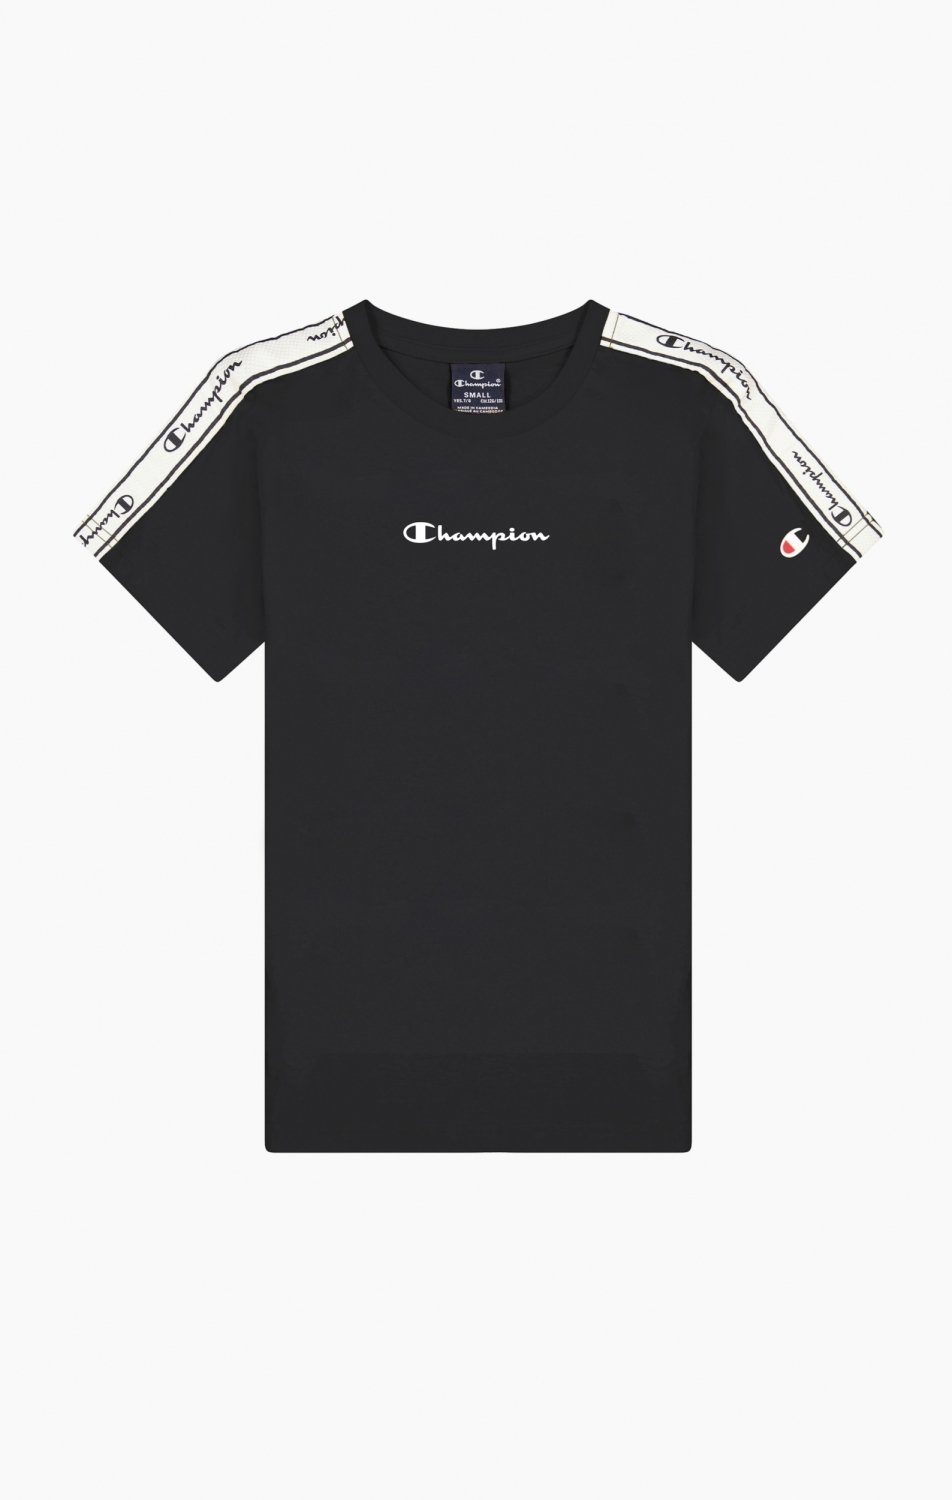 Champion T-Shirt schwarz/weiß Kids T-Shirt Crewneck